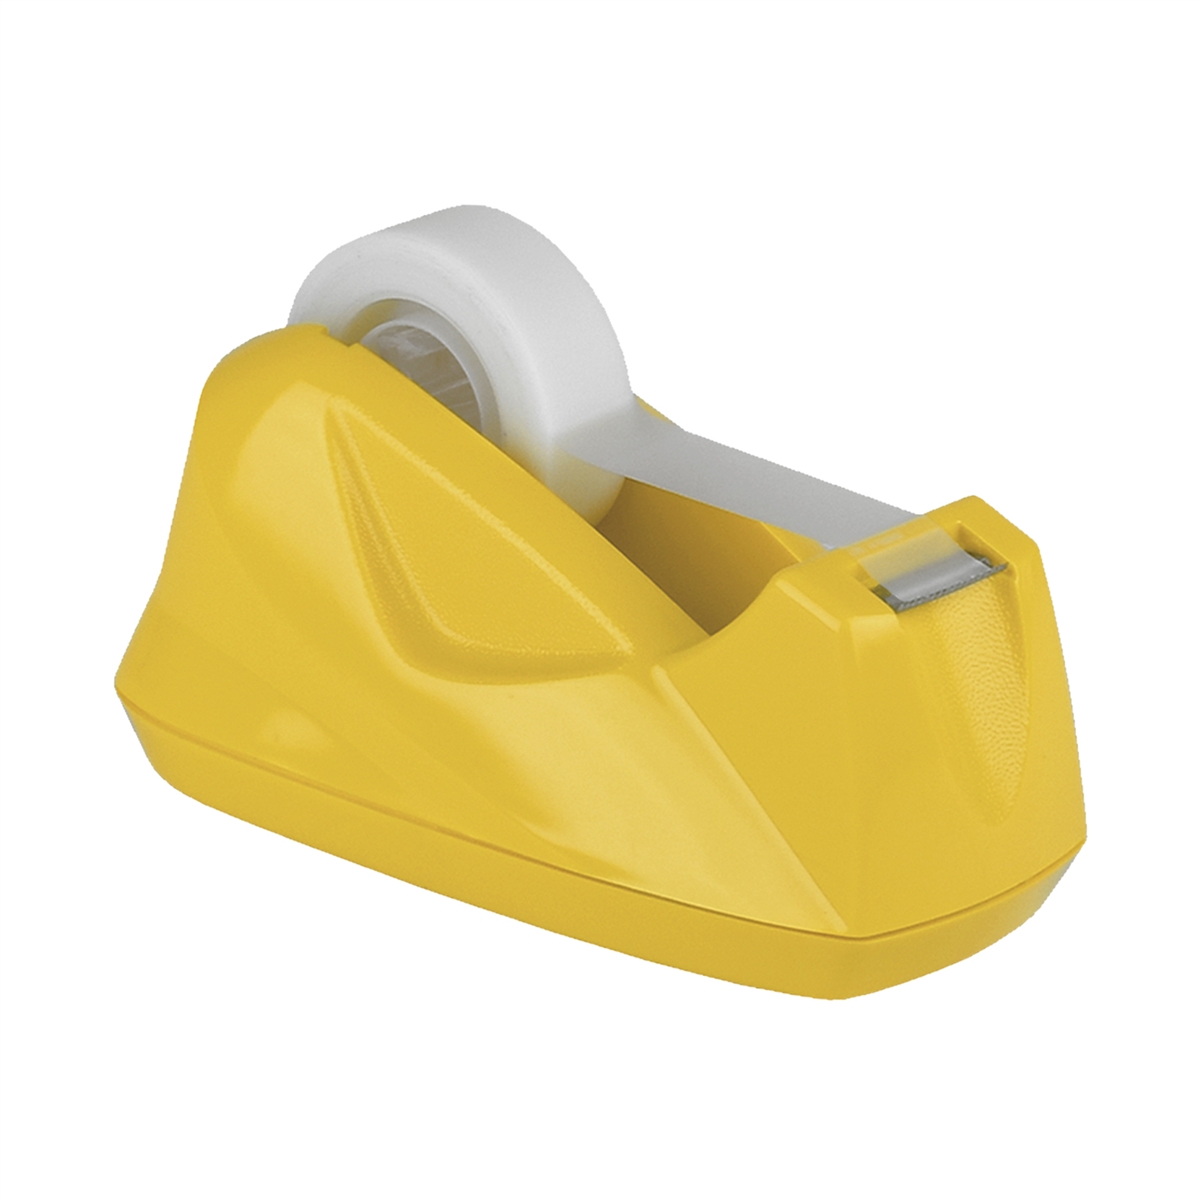 Acrimet Premium Tape Dispenser (Yellow Color)